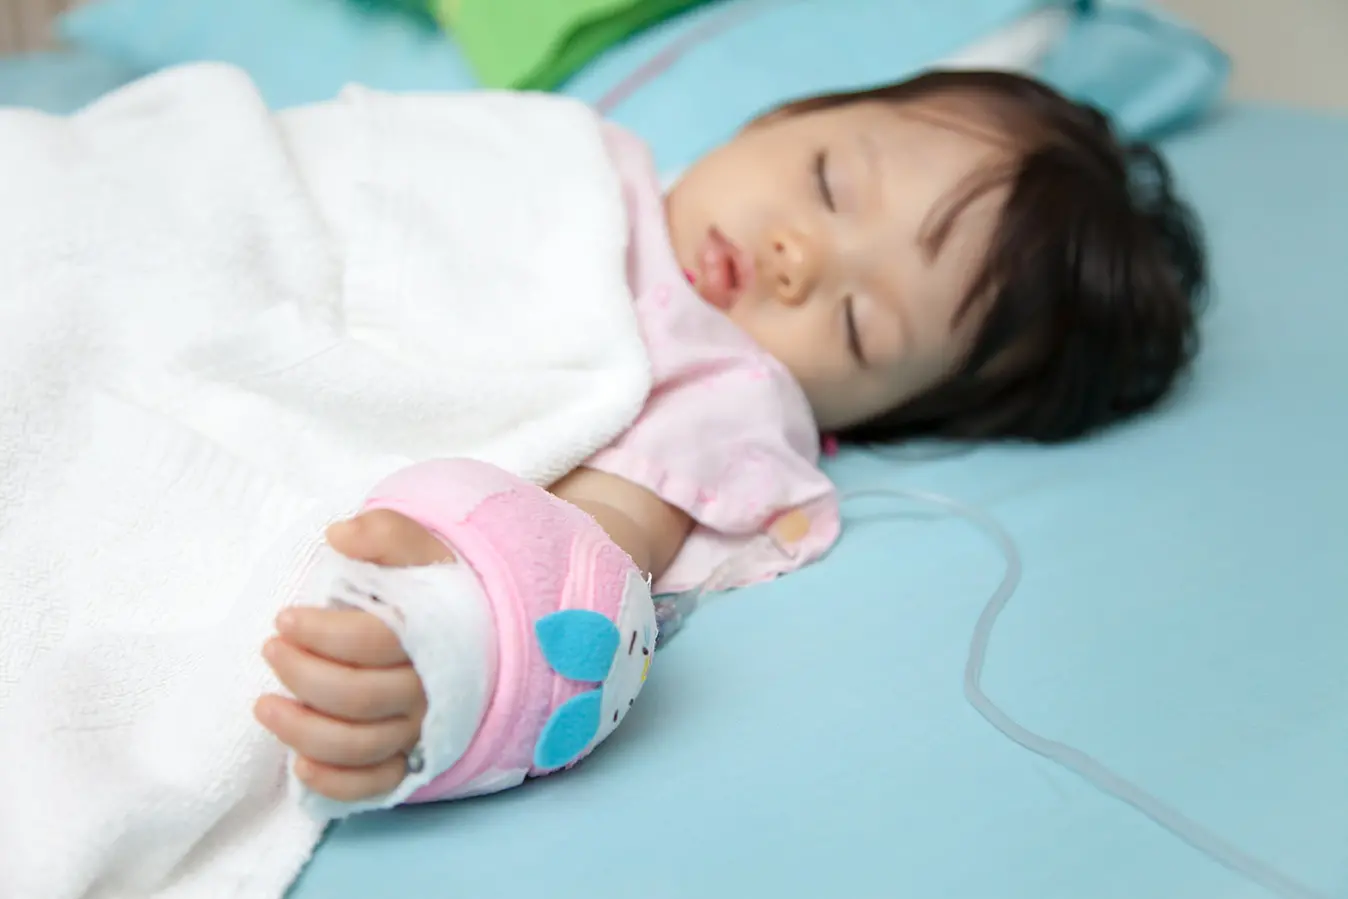 Ketahui 4 Faktor Penyebab Penyakit Tifus pada Anak